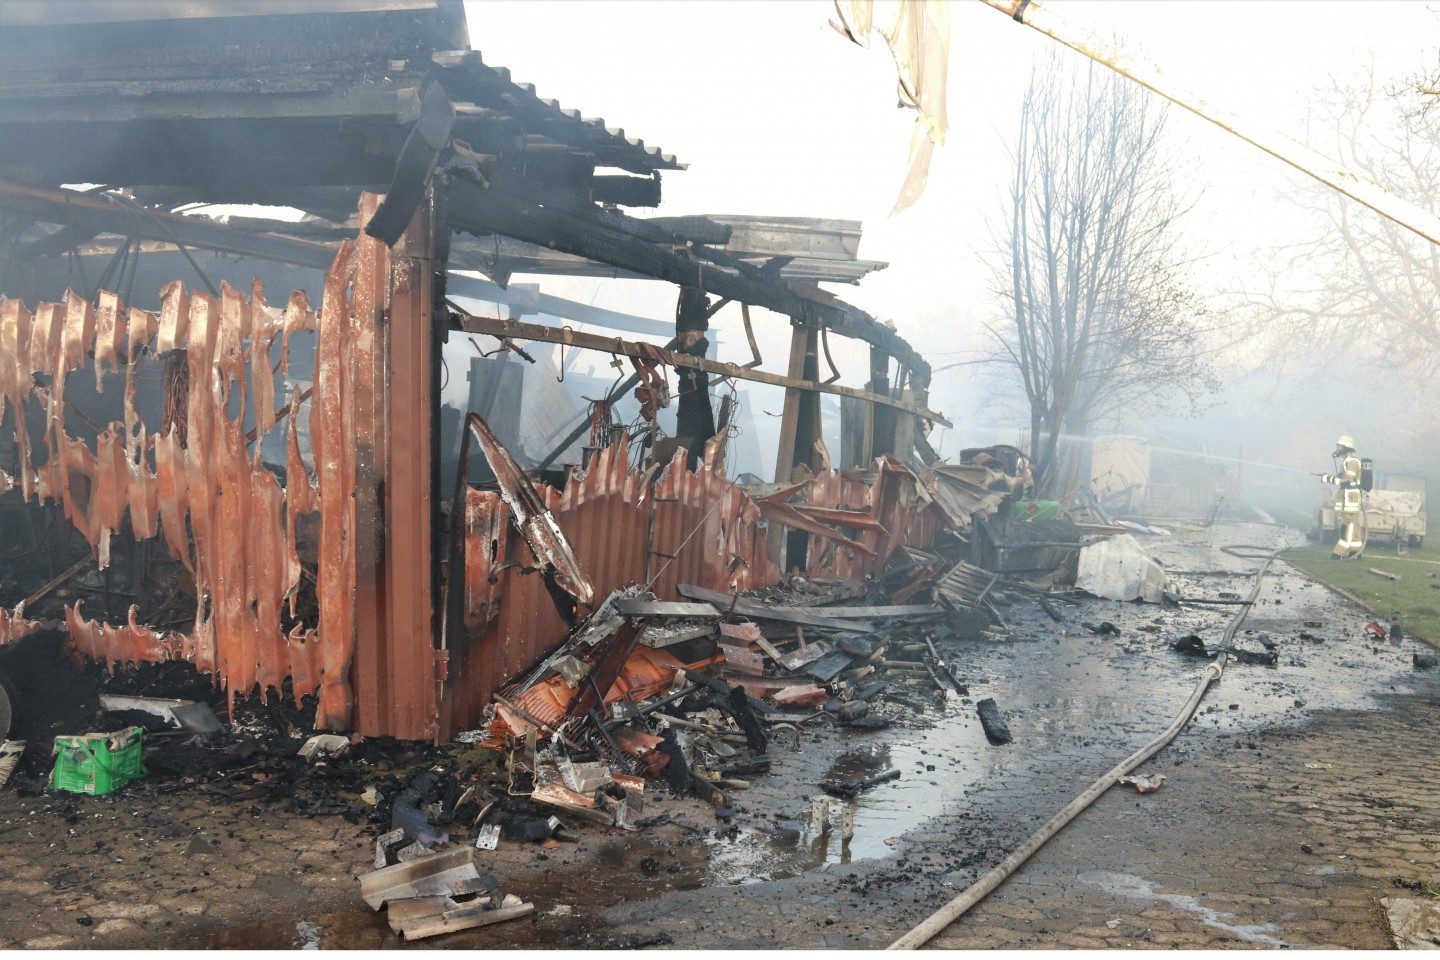 POL-HX: Garage und Holzlager geraten in Brand